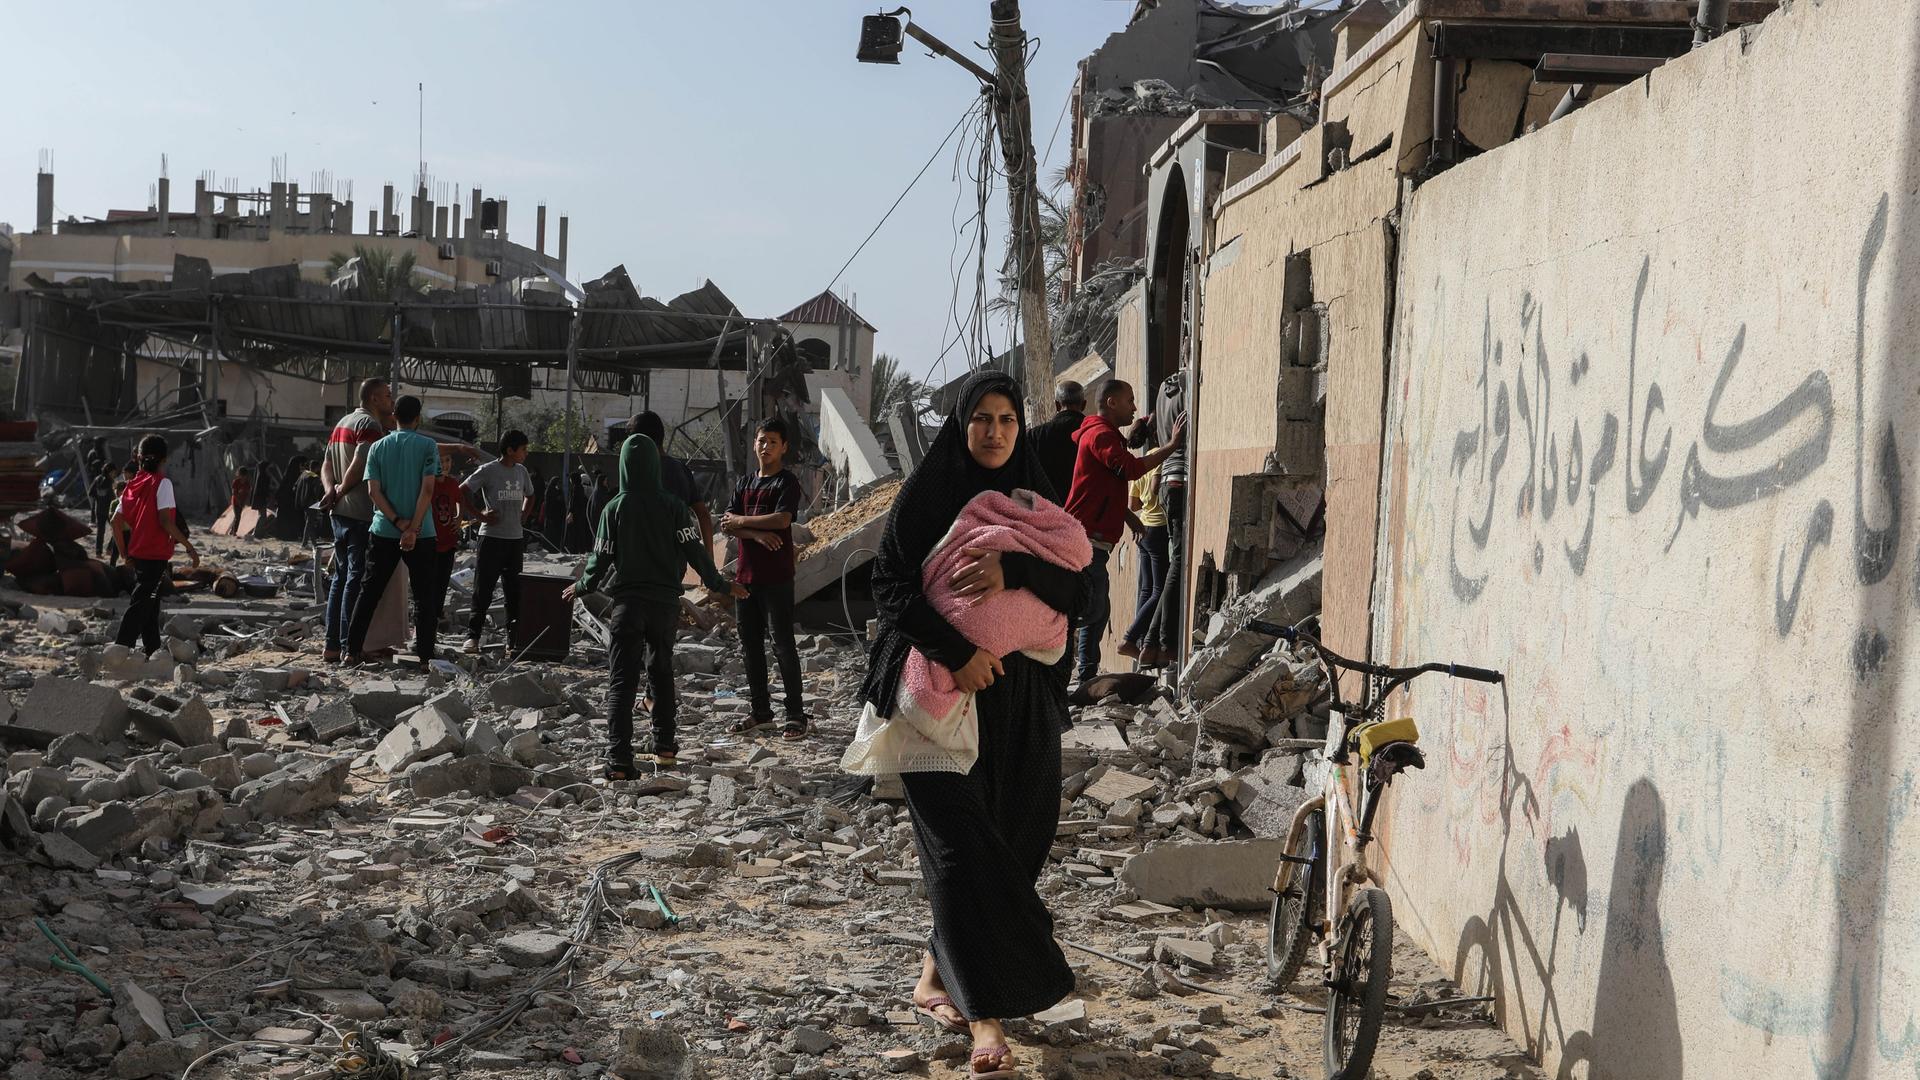 Palästinenser inspizieren beschädigte Häuser, nachdem israelische Kampfflugzeuge ein Haus bombardiert hatten. Im Vordergrund ist eine Frau mit einem Kind auf dem Arm.